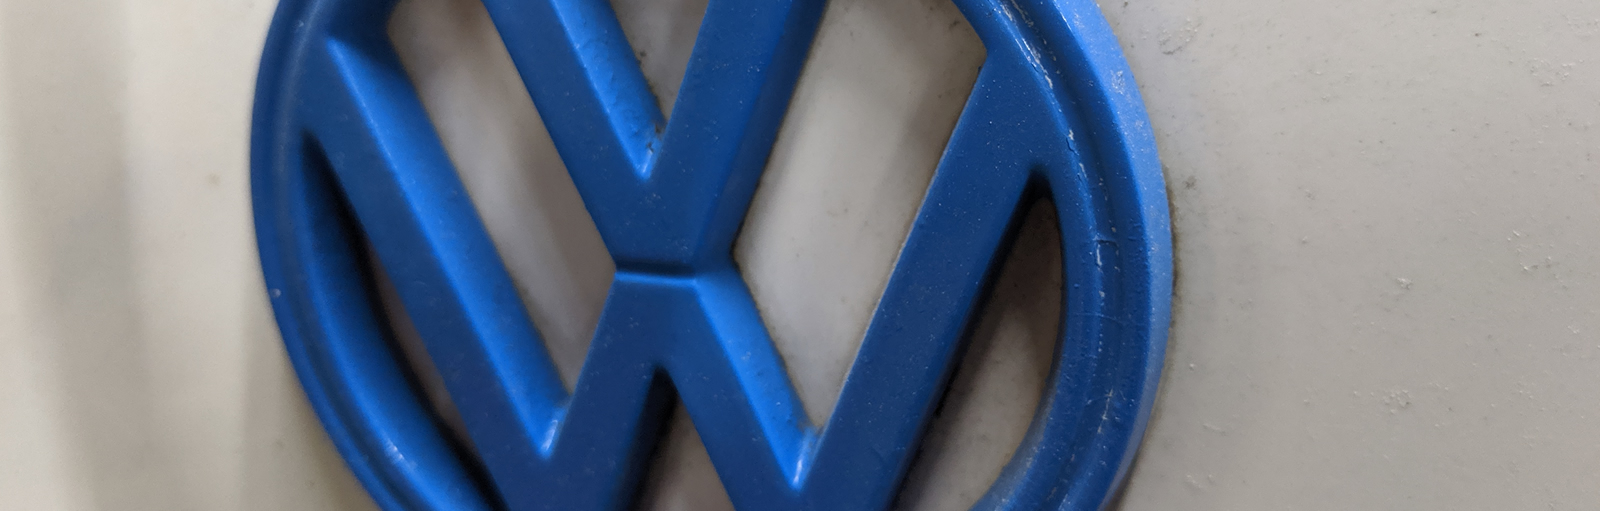 VW Repairs Leeds, Herbie Hospital